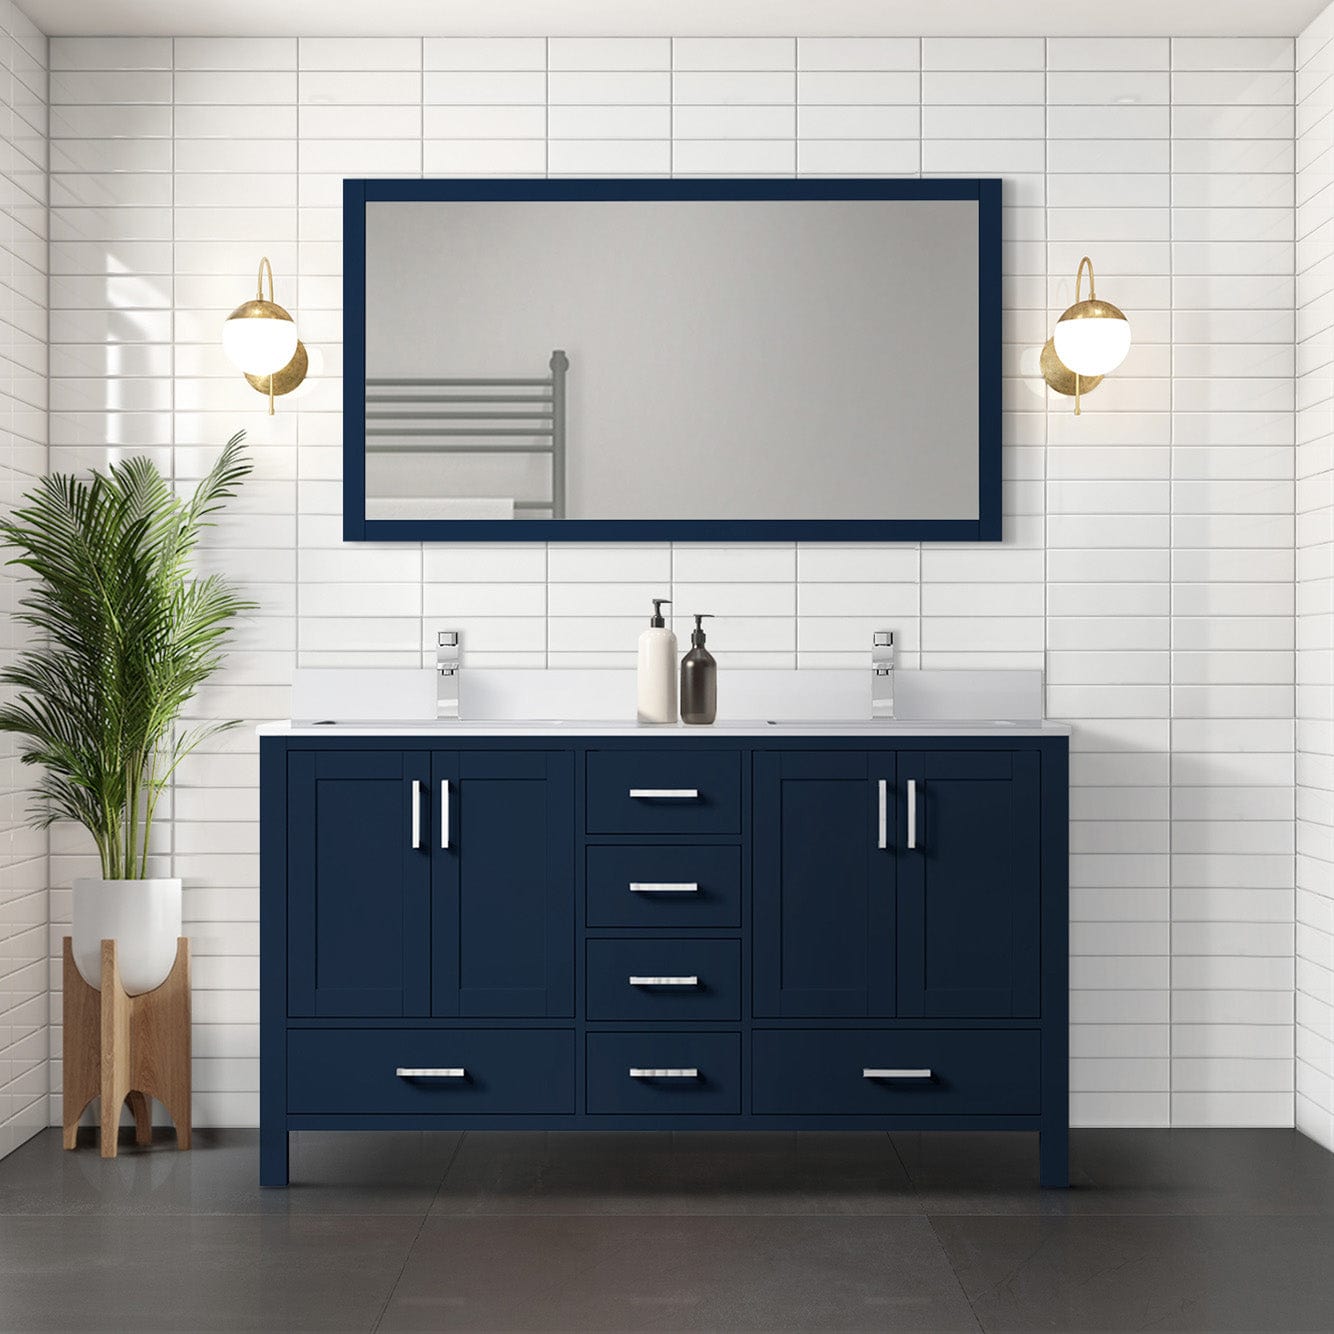 Lexora Bathroom Vanity Navy Blue / Cultured Marble / No Mirror Big Sur 60" x 22" Double Bath Vanity